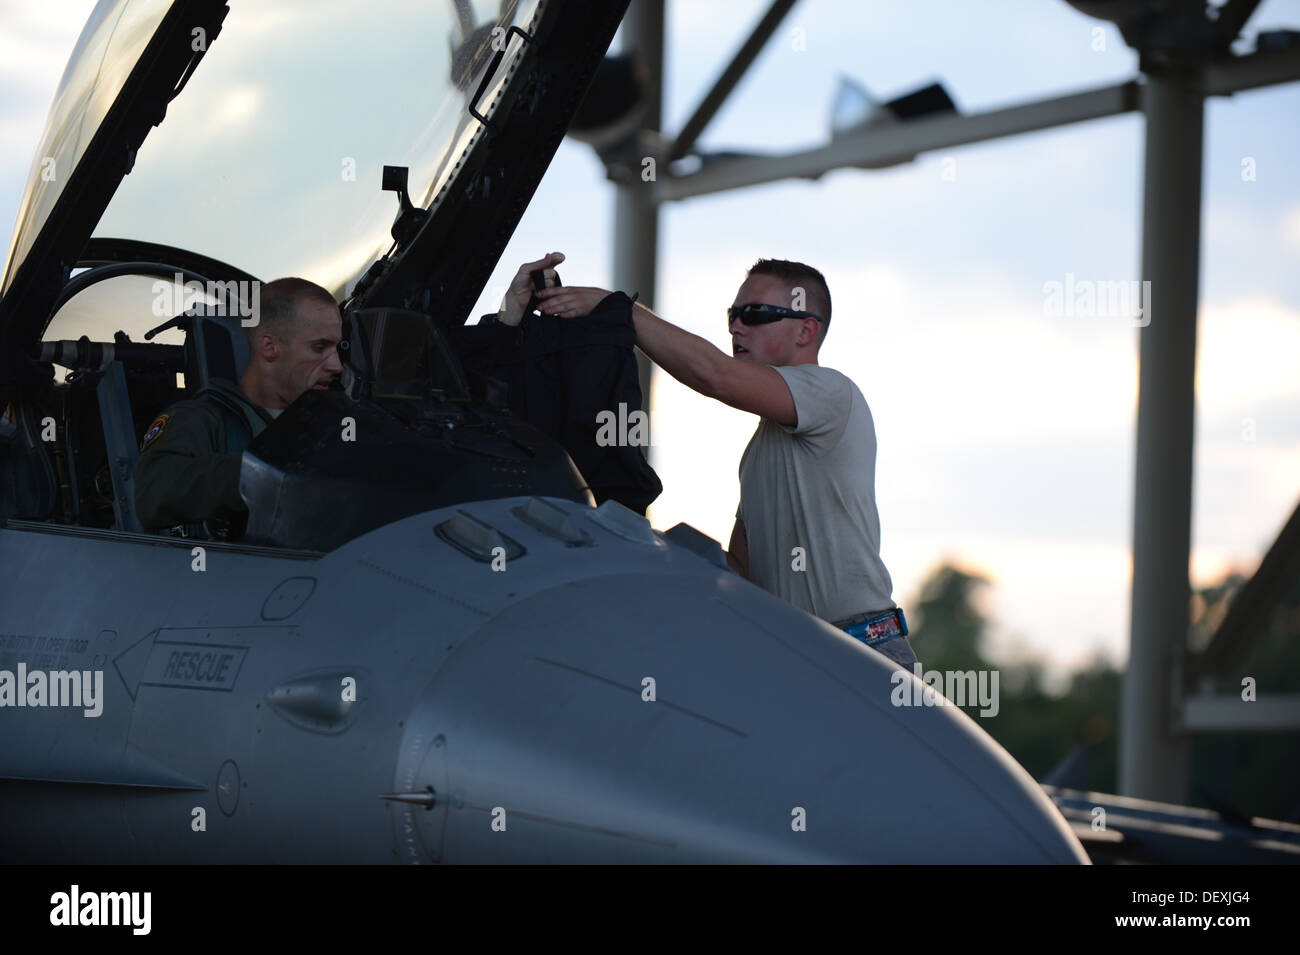 SHAW AIR FORCE BASE, L.C. - Un responsable affecté à la 20e Escadron de maintenance des aéronefs de l'Armée de l'air aide un pilote de F-16 affecté au 55e Escadron de chasse park et débarquer après l'atterrissage à Shaw Air Force Base 18 septembre 2013. La 55e FS vient de co Banque D'Images